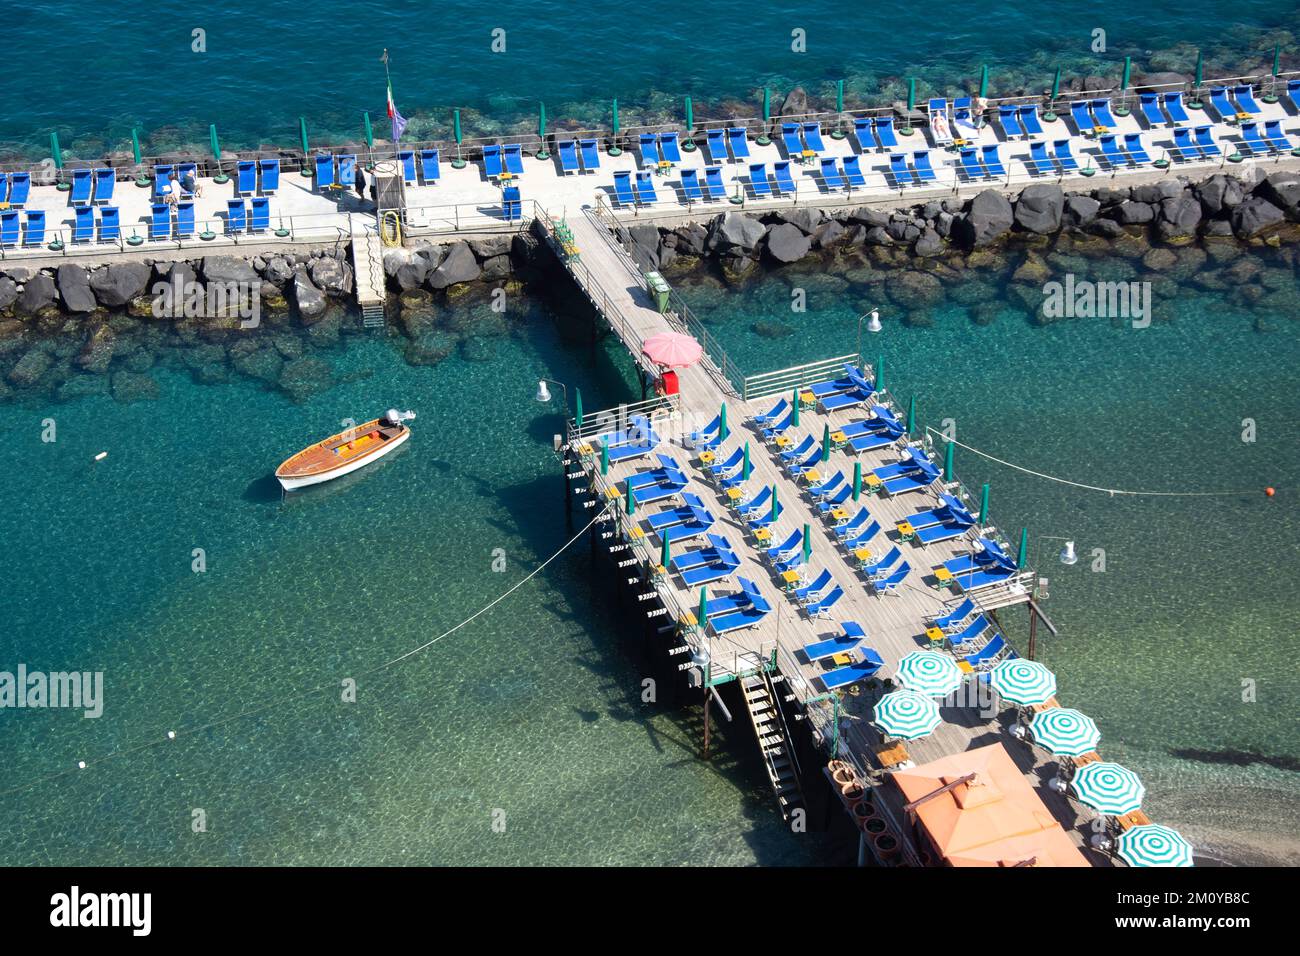 Vista del embarcadero del club de playa desde la terraza Villa Comunale (jardín público), Sorrento (Surriento), región Campania, Italia Foto de stock